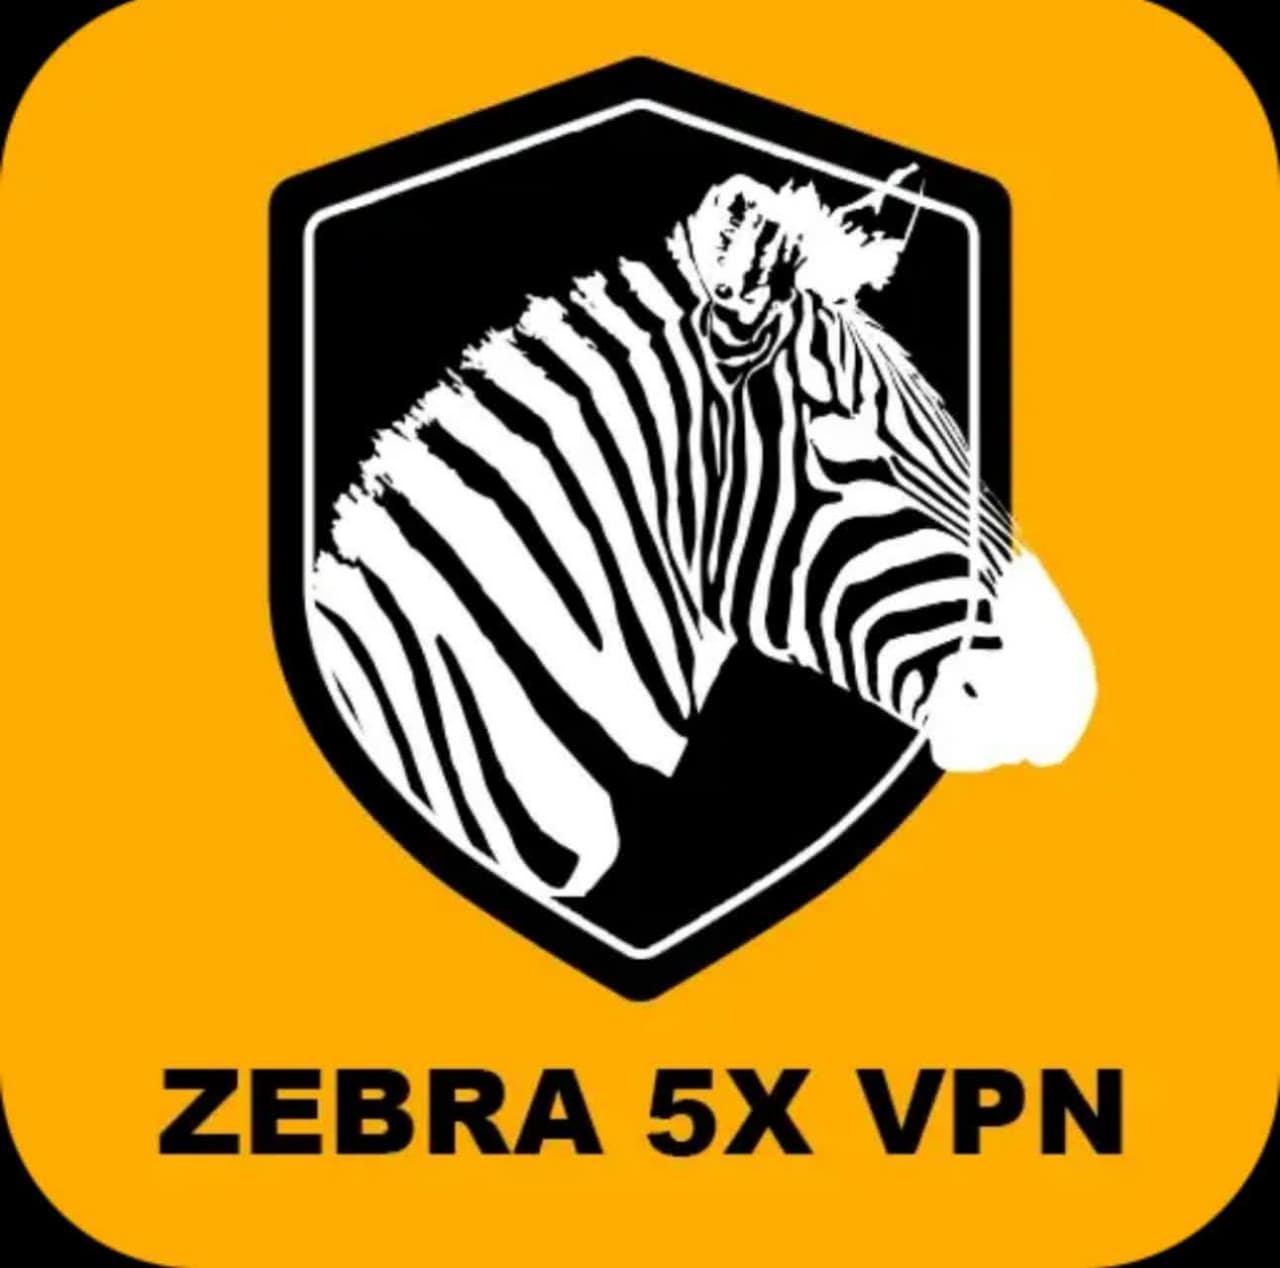 دانلود فیلتر شکن نامحدود Zebra 5x Vpn برای اندروید